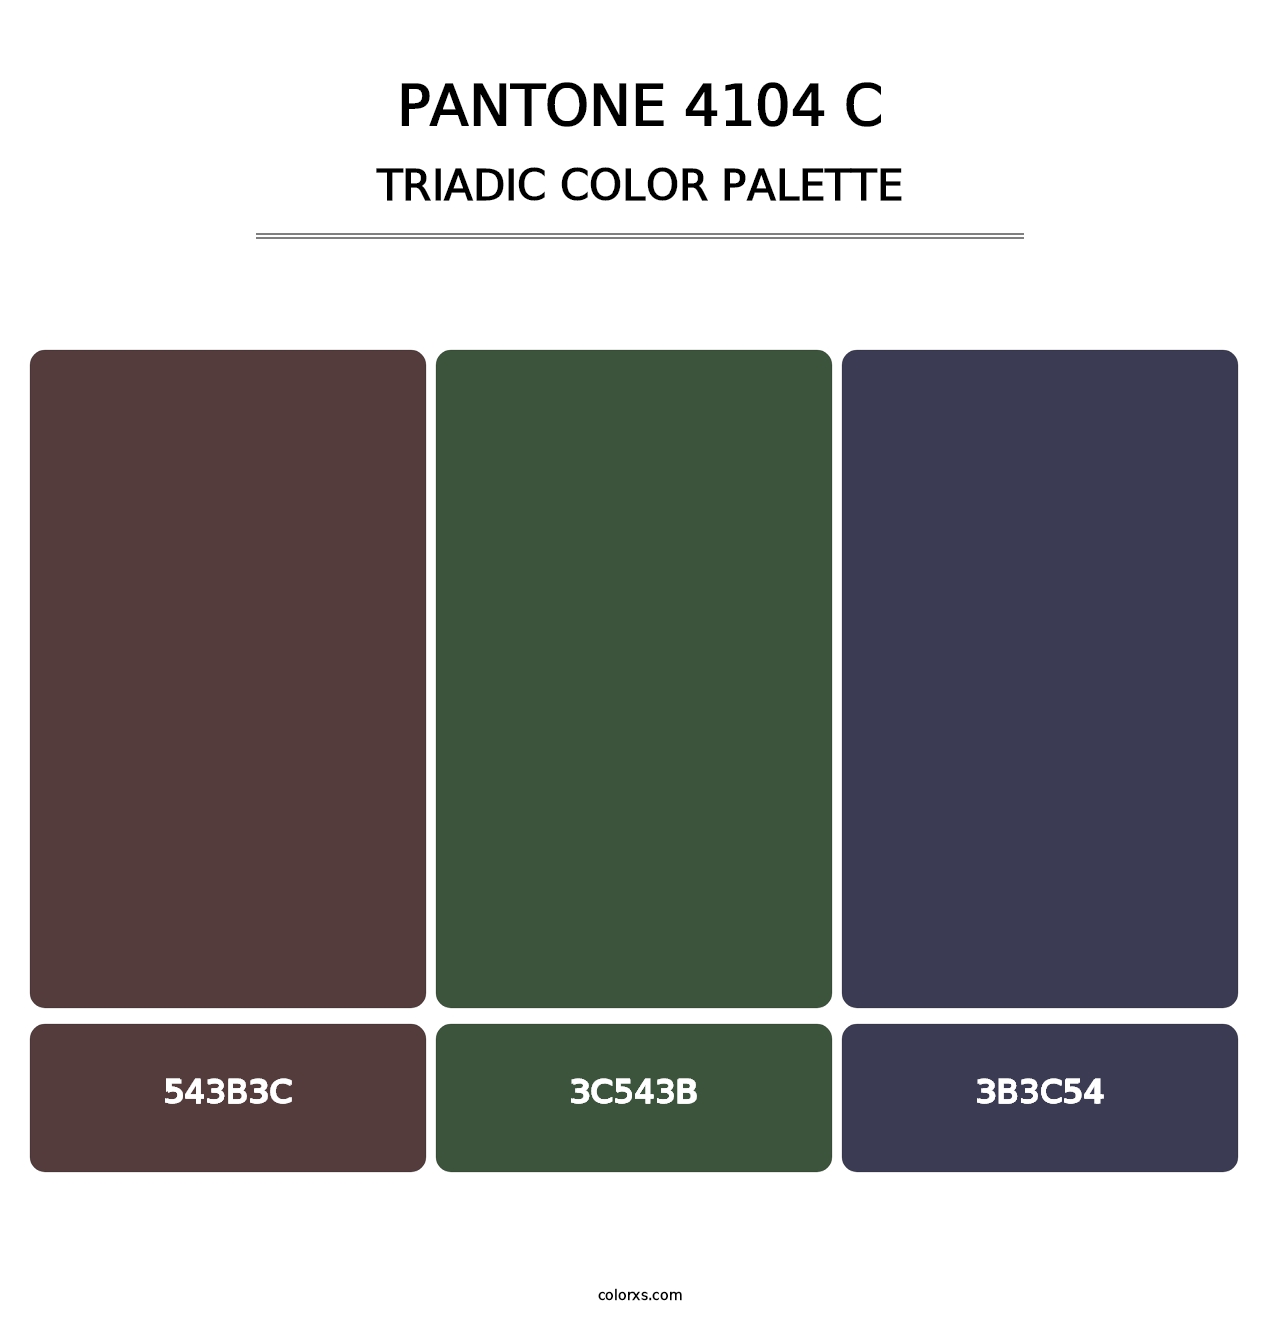 PANTONE 4104 C - Triadic Color Palette